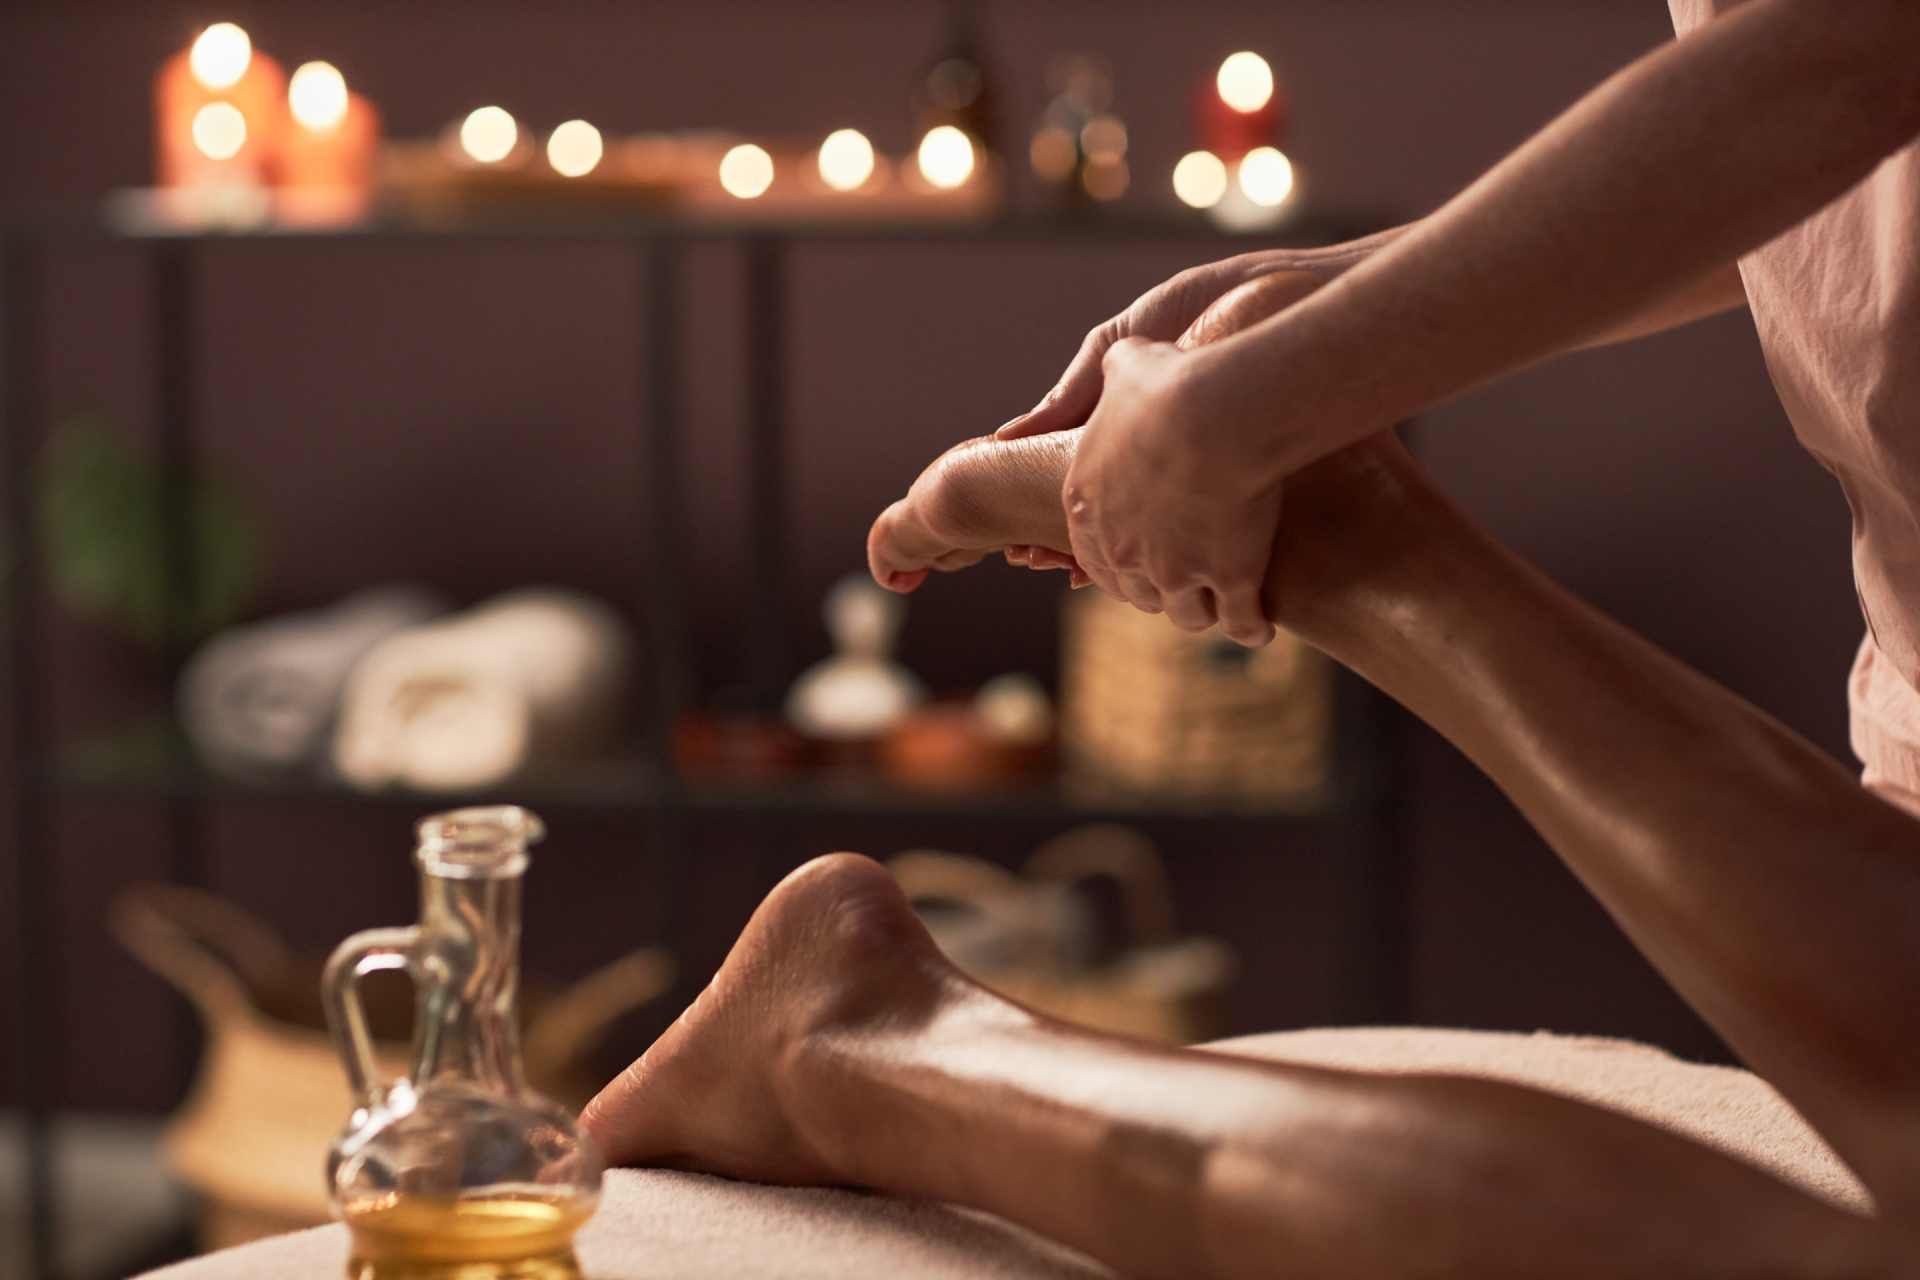 Hawaiianische Massage wird auf einer Frau durchgeführt - Auf dem Bild werden gerade die Füße massiert